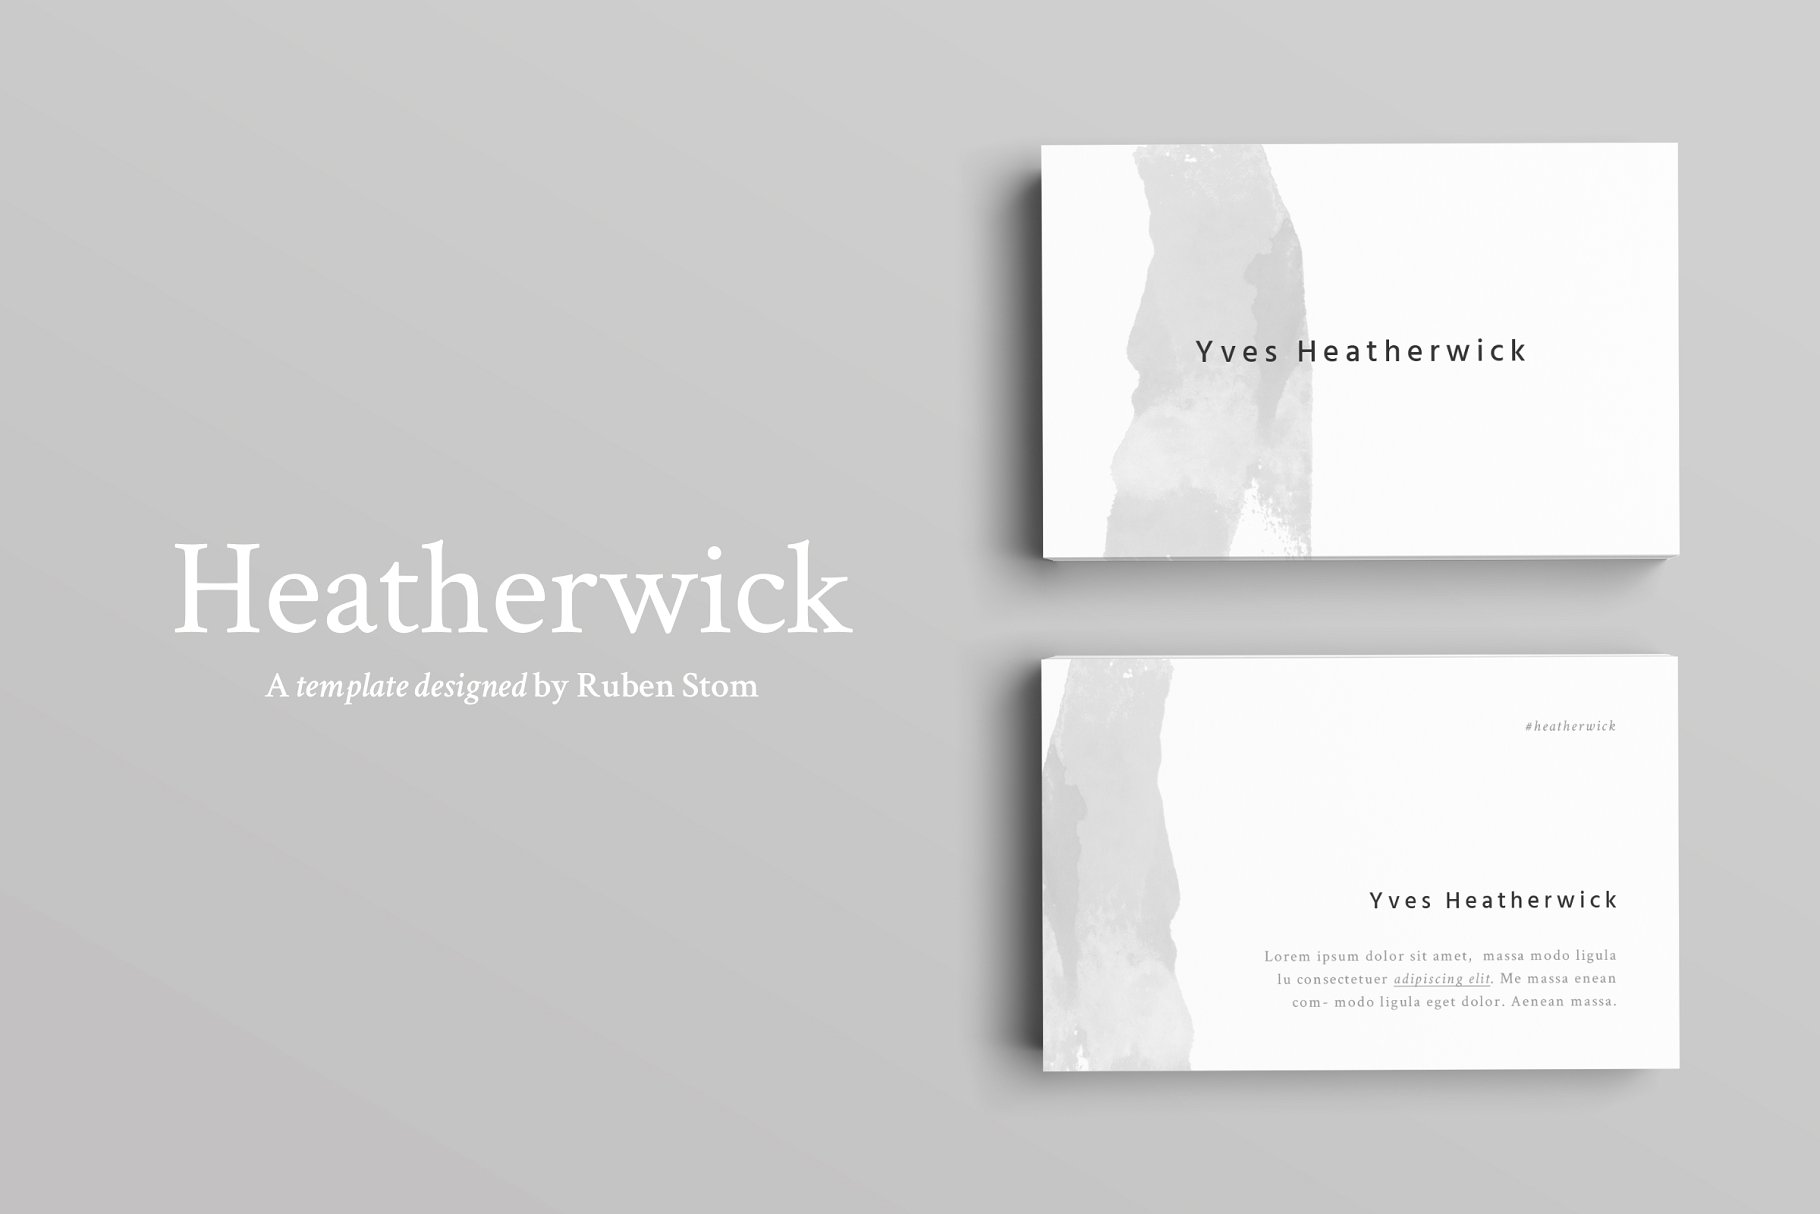 极简主义设计风格企业名片设计模板 Heatherwick Business Card Template插图